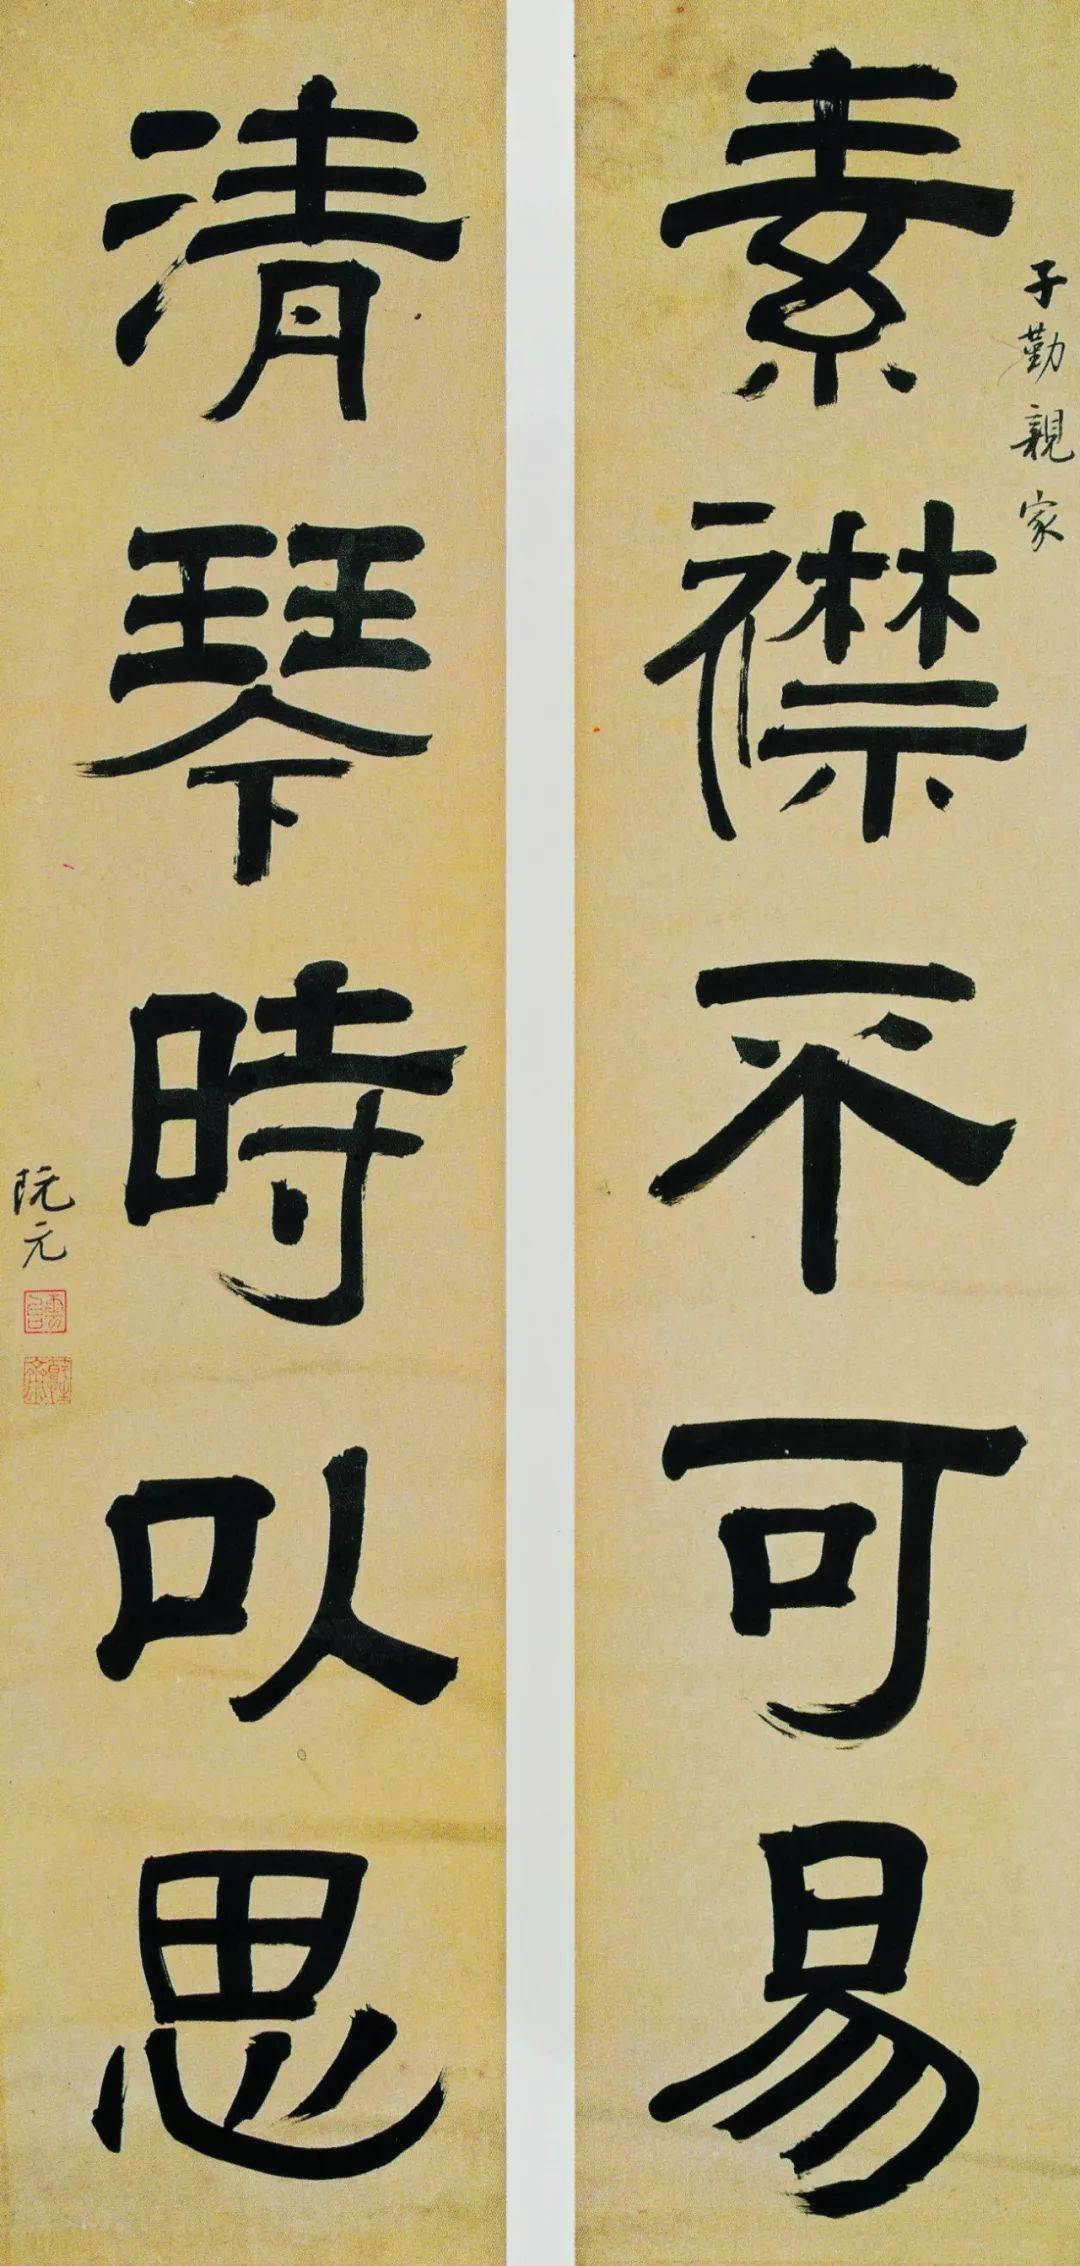 清代在中国书法史上是具有重大意义的转折点,碑派书法风尚是如何